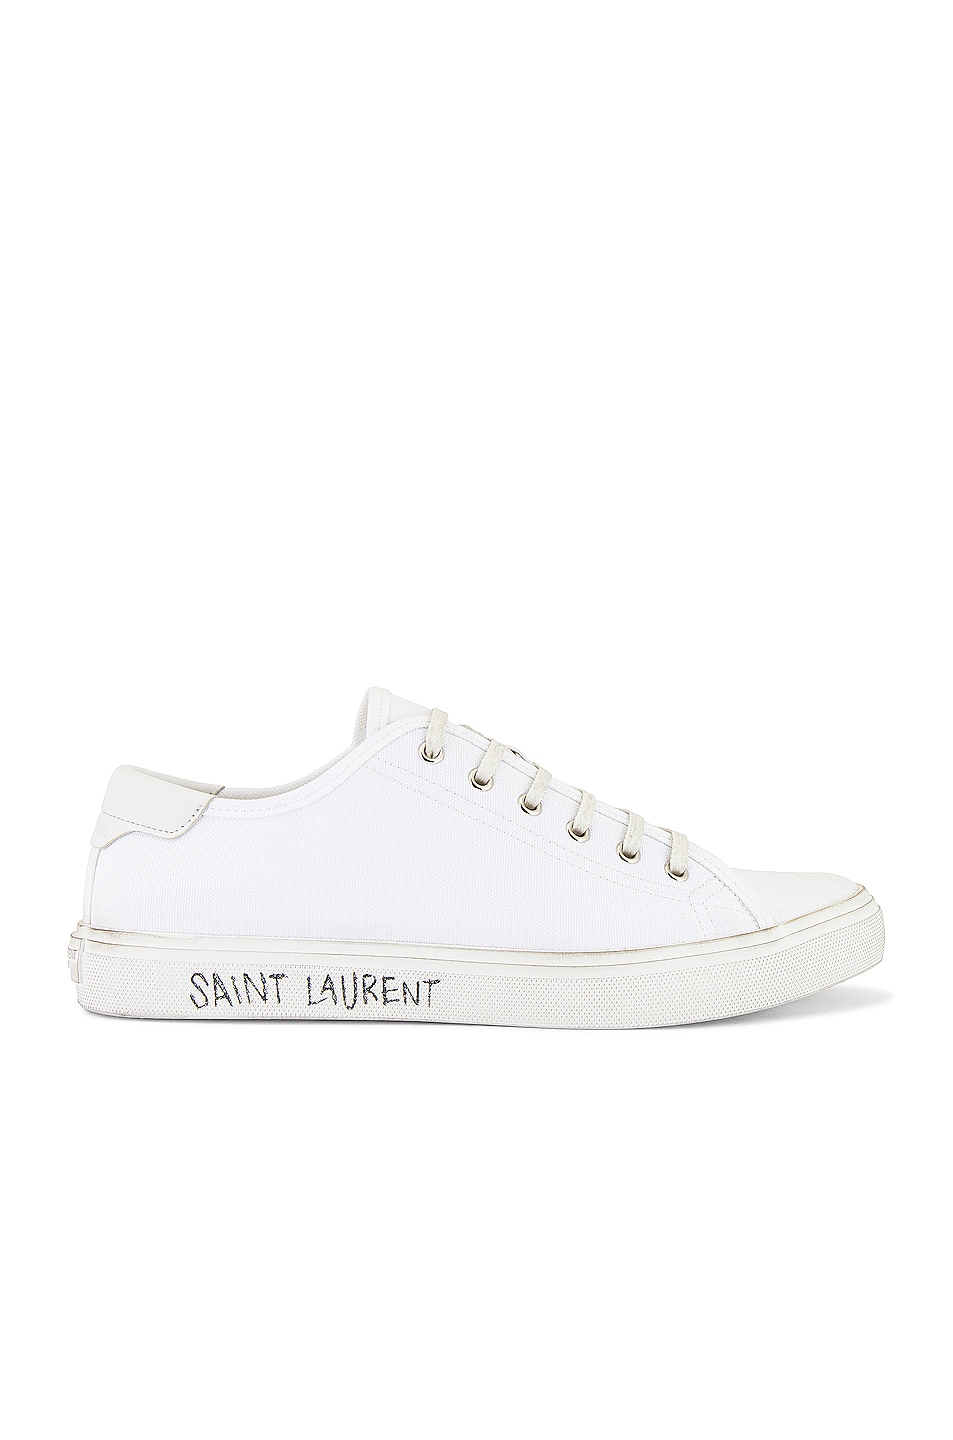 Image 1 of Saint Laurent Malibu Low Top Sneaker in Optic White